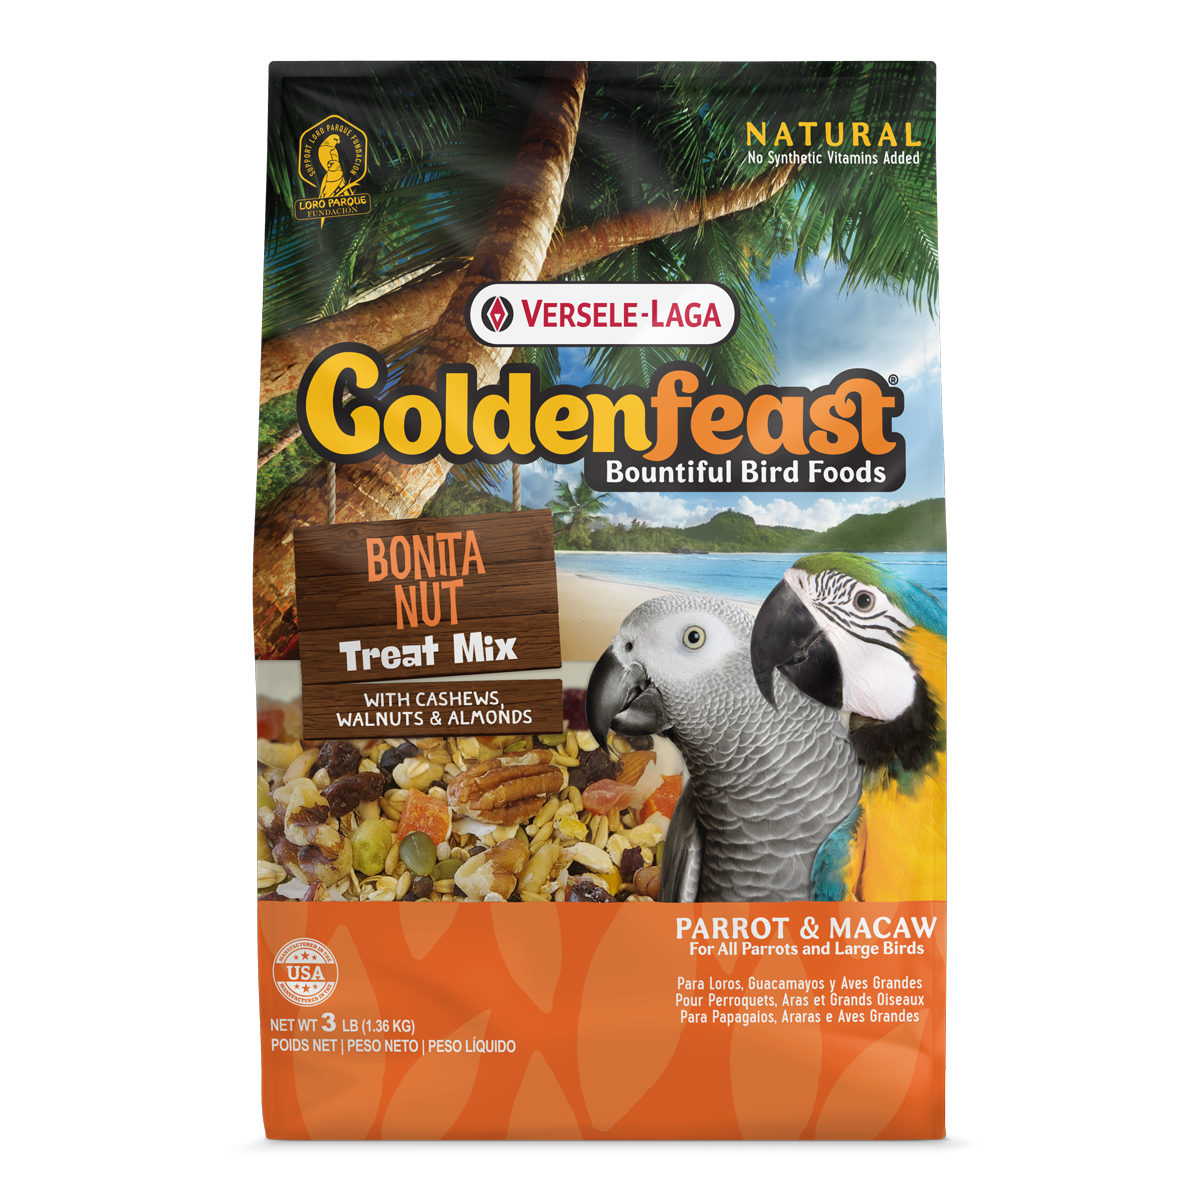 Goldenfeast: Bonita Nut Treat Mix: 3lb